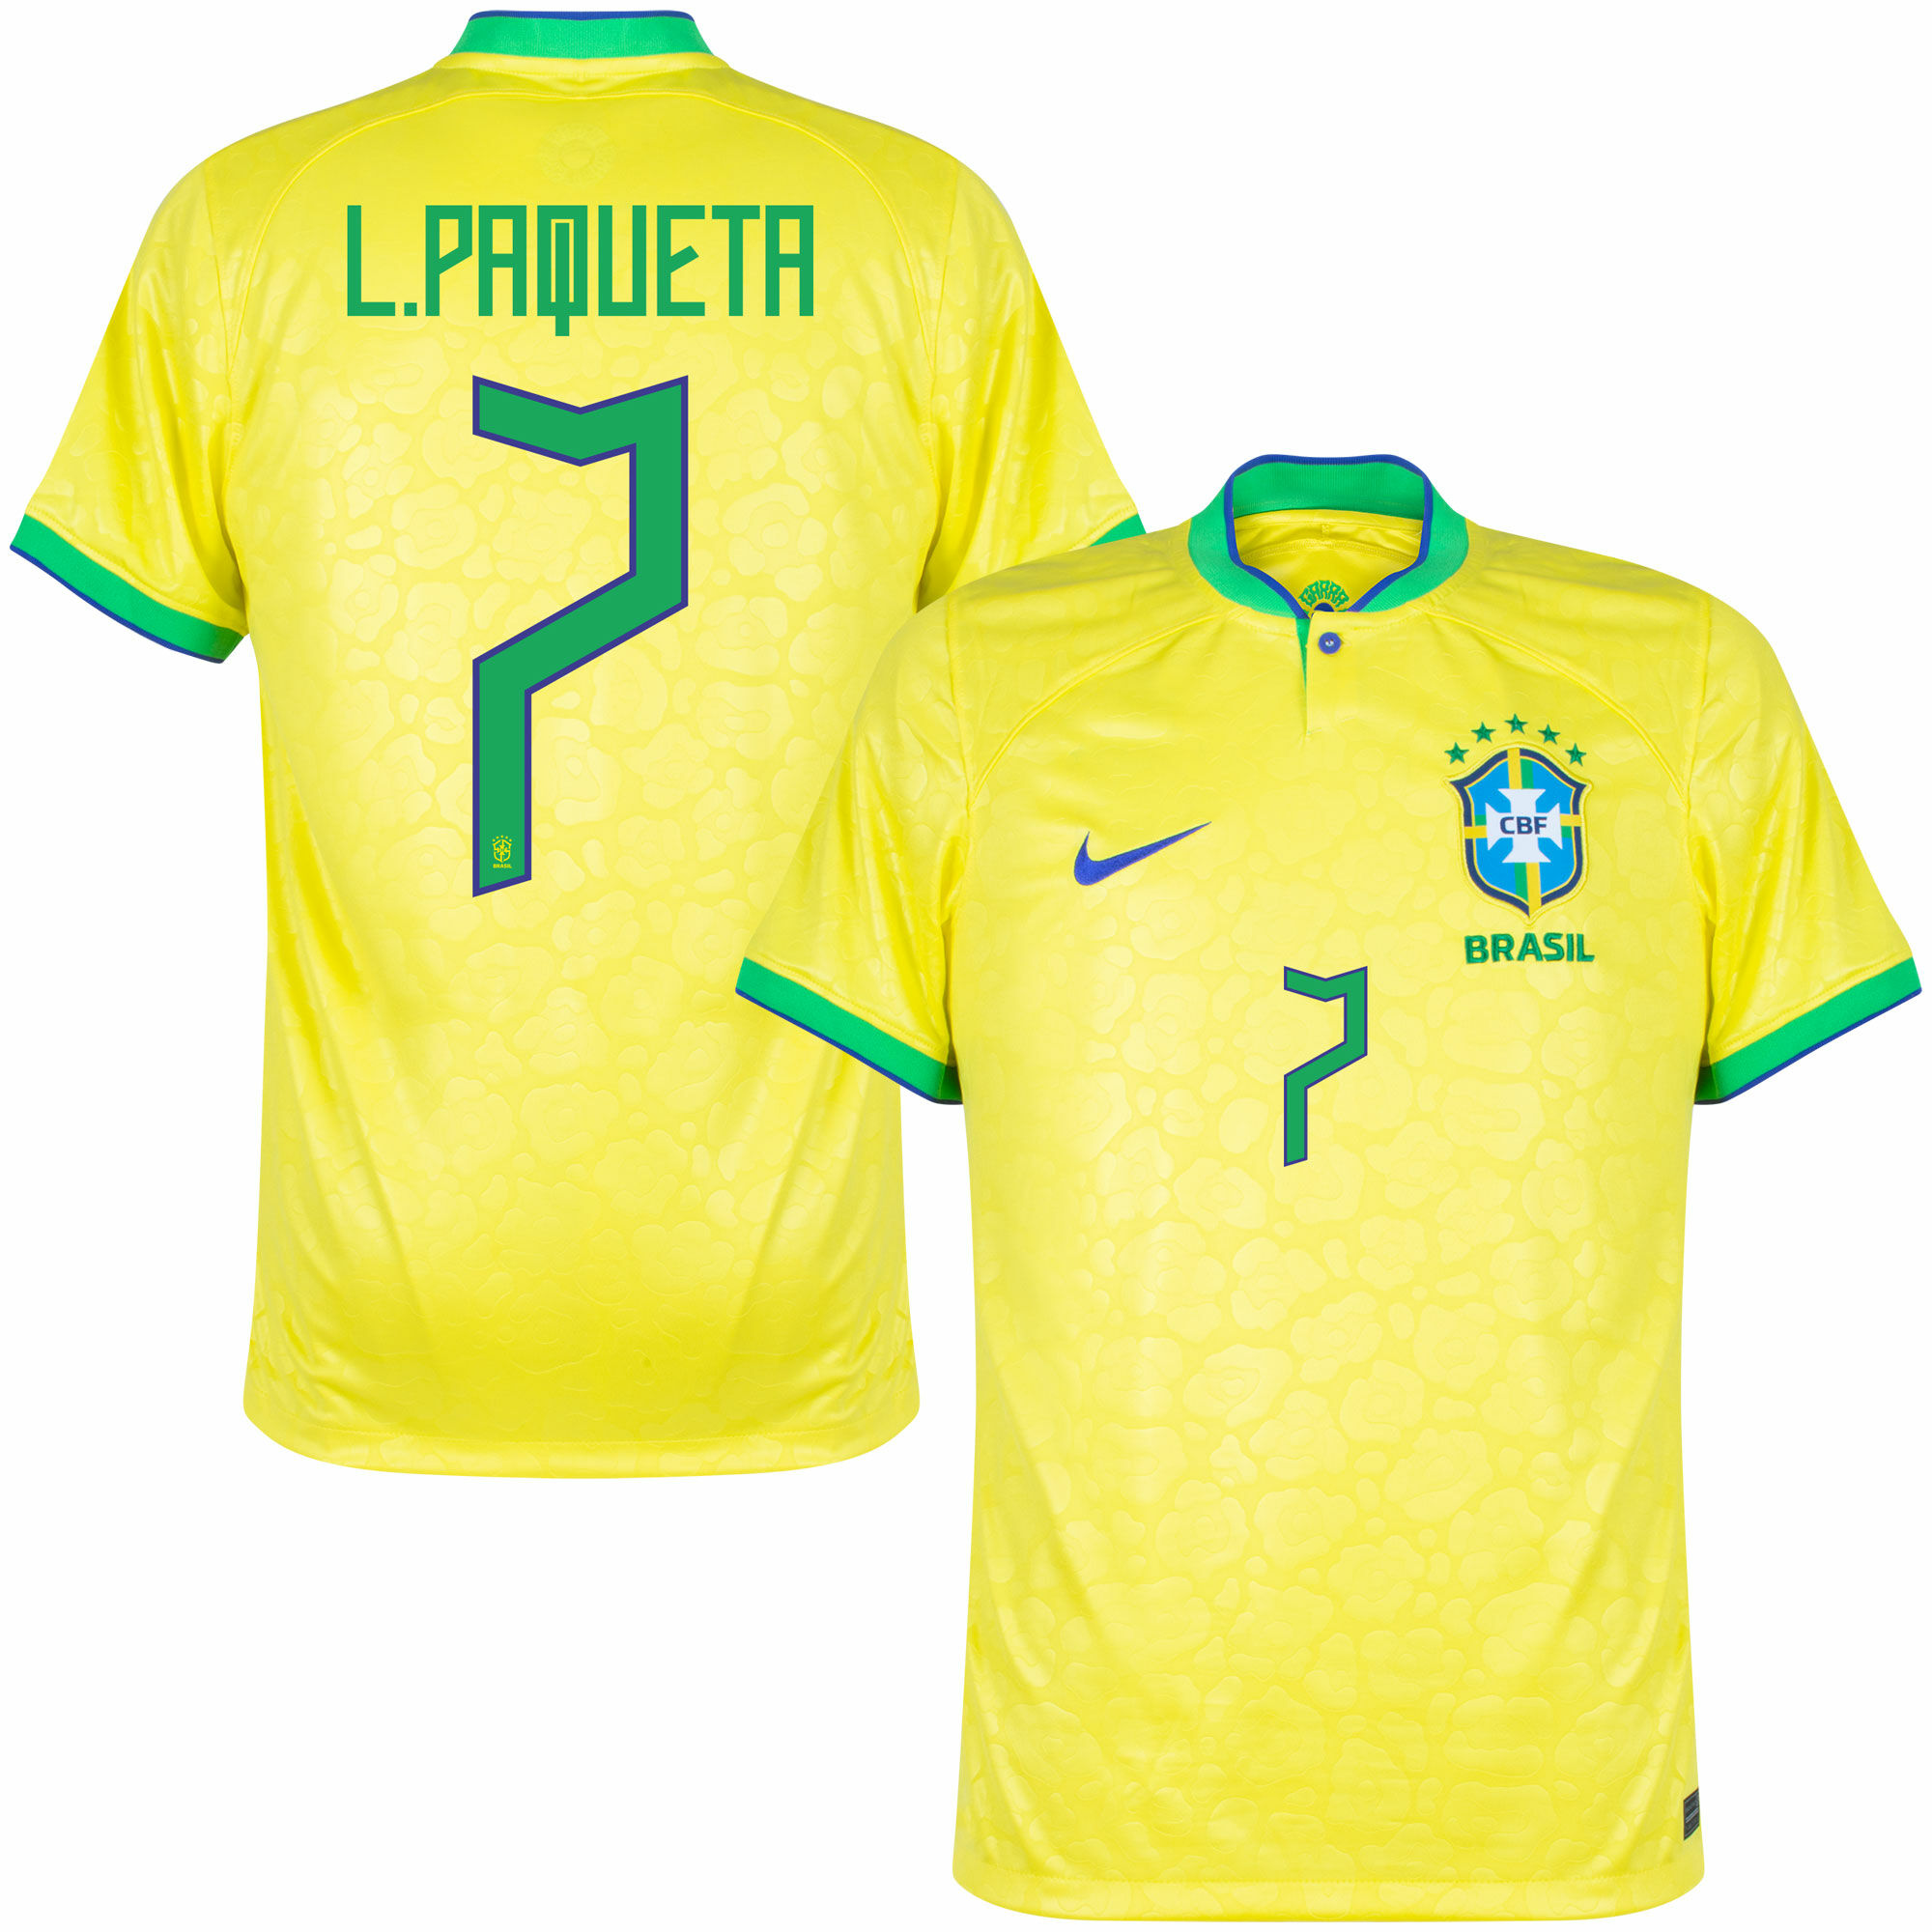 Brazílie - Dres fotbalový - oficiální potisk, žlutý, domácí, sezóna 2022/23, číslo 7, Lucas Paquetá